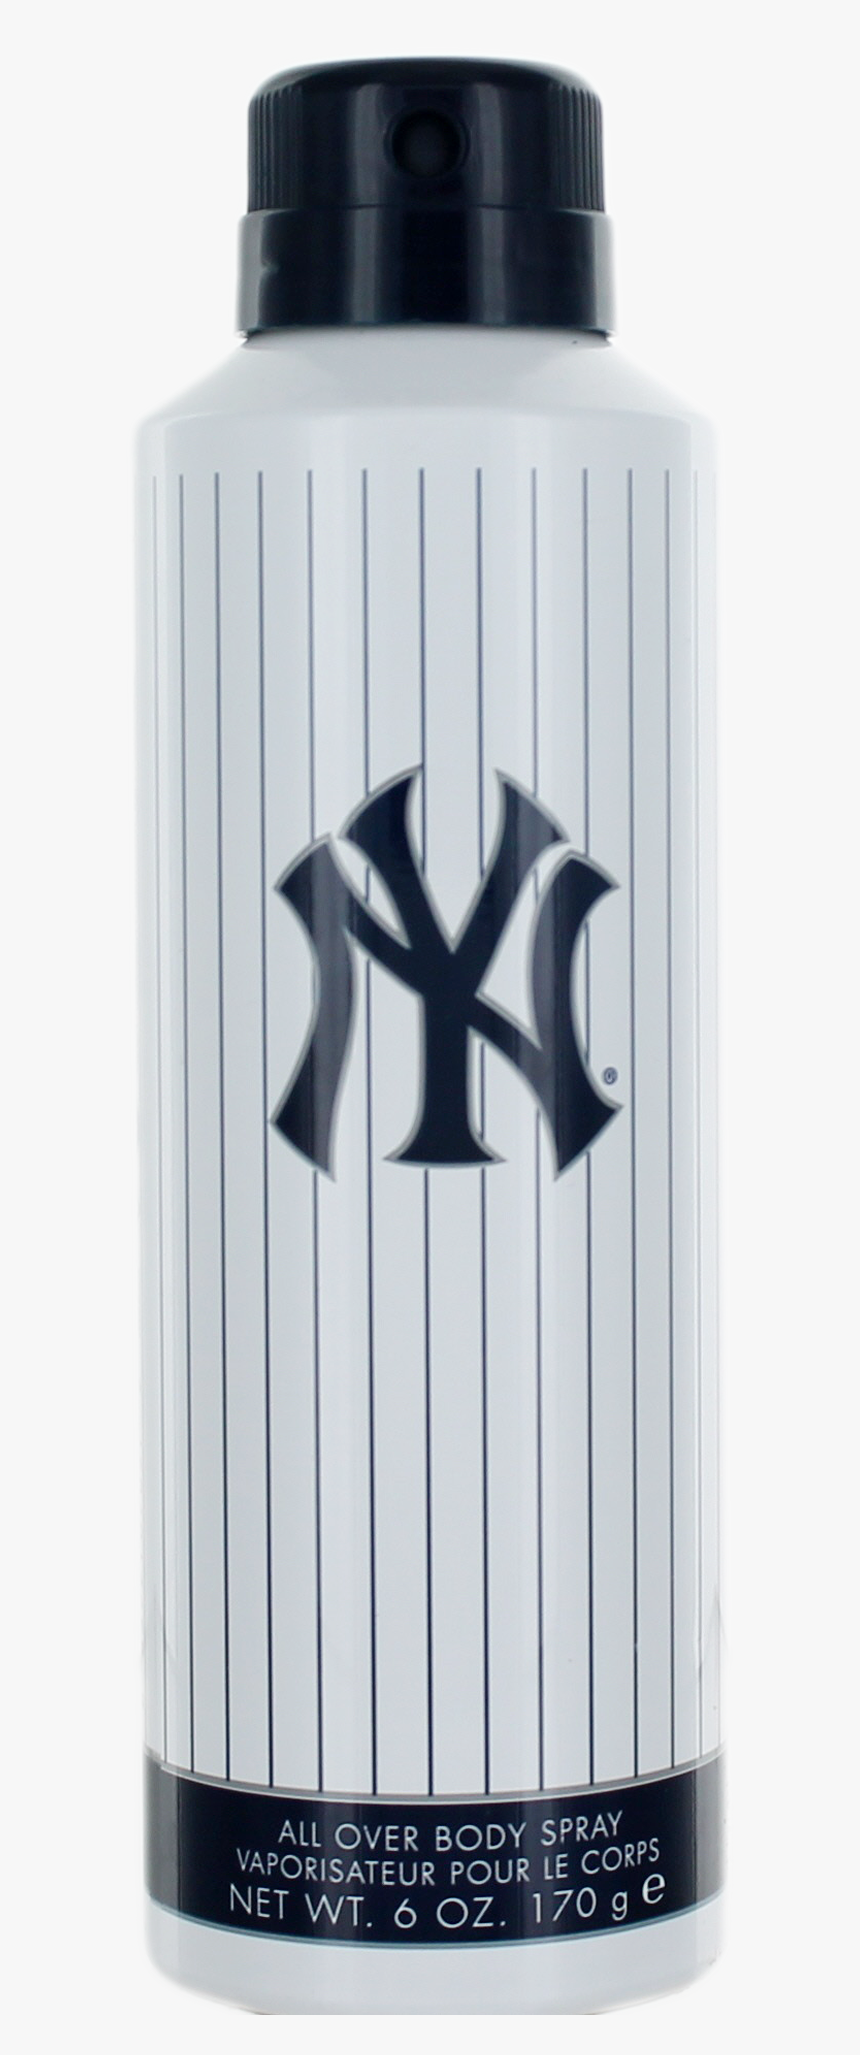 New York Yankees Png, Transparent Png, Free Download